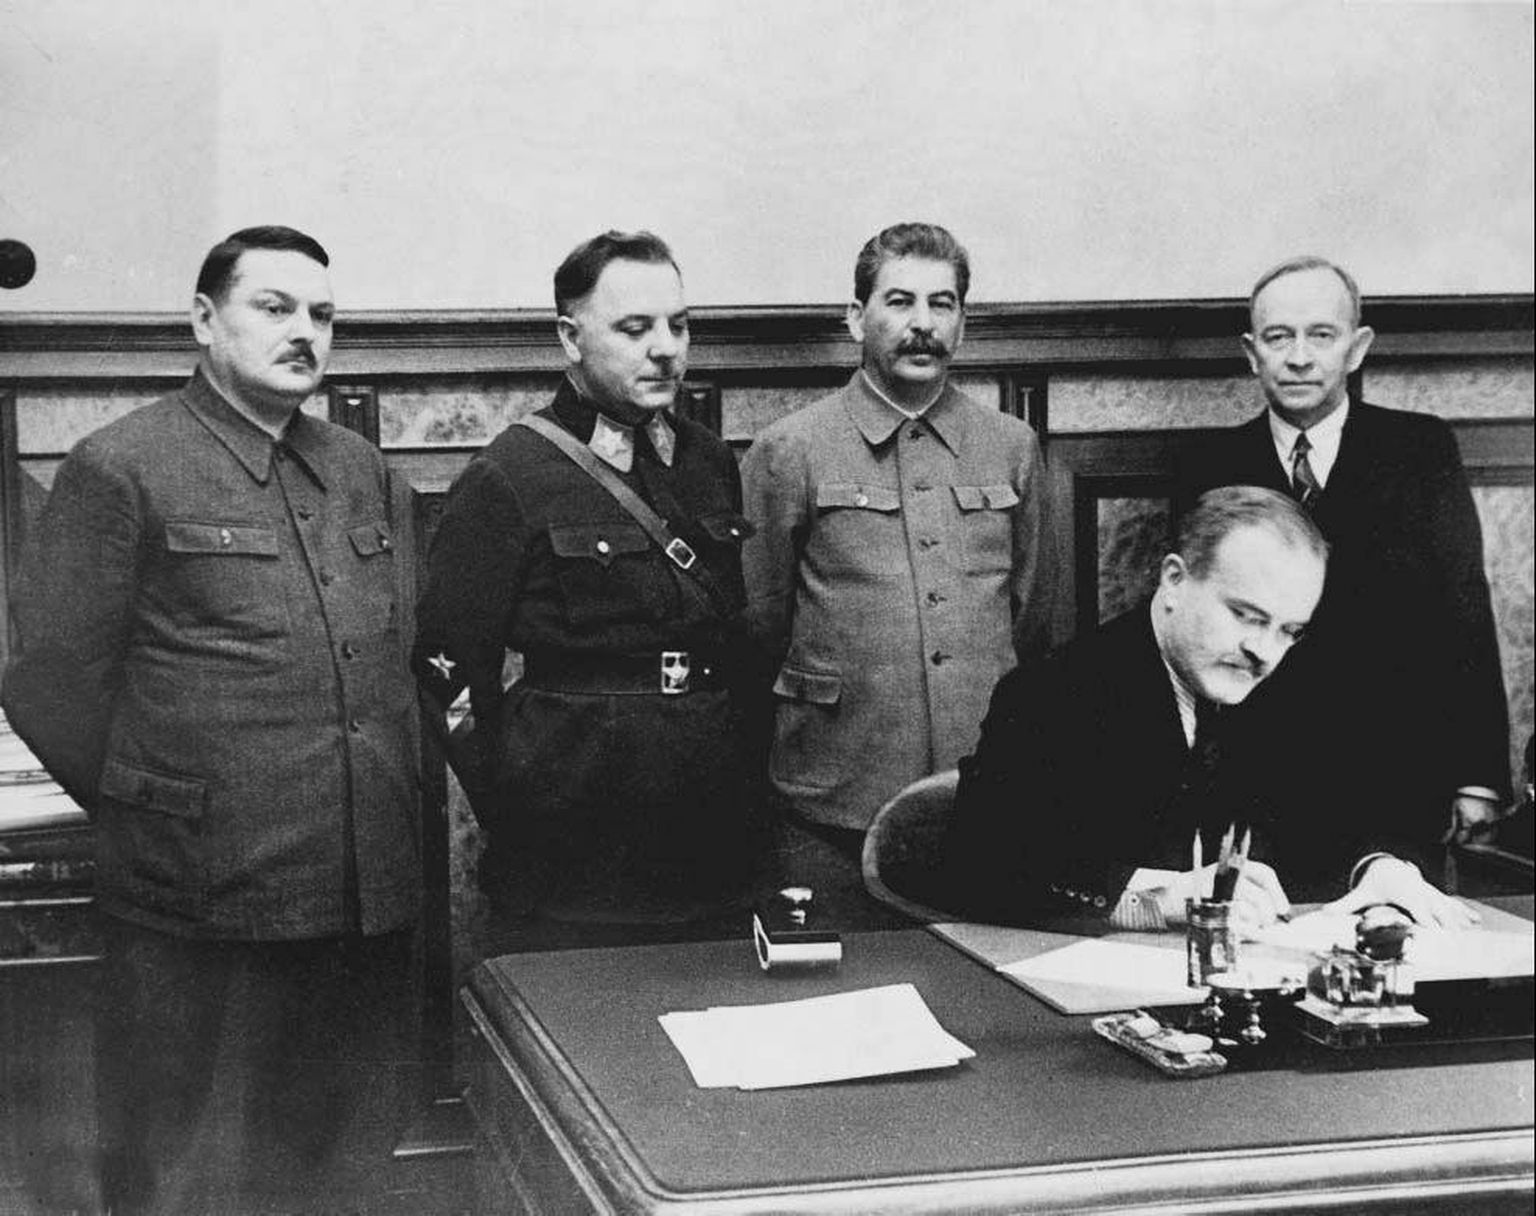 Nõukogude Liit asutas Talvesõja teisel päeval Soome kommunistidest koosneva nn Terijoe valitsuse. Talvesõja kolmandal päeval, 2. detsembril 1939 kirjutati Moskvas selle valitsusega alla sõpruse ja vastastikuse abistamise leping. Vasakult paremale: Andrei Ždanov, Kliment Vorošilov, Jossif Stalin, Vjatšeslav Molotov ja Terijoe valitsuse juht Otto Wille Kuusinen. 12. märtsil 1940 sõlmis Nõukogude Liit Soome seadusliku valitsusega Moskva rahulepingu.